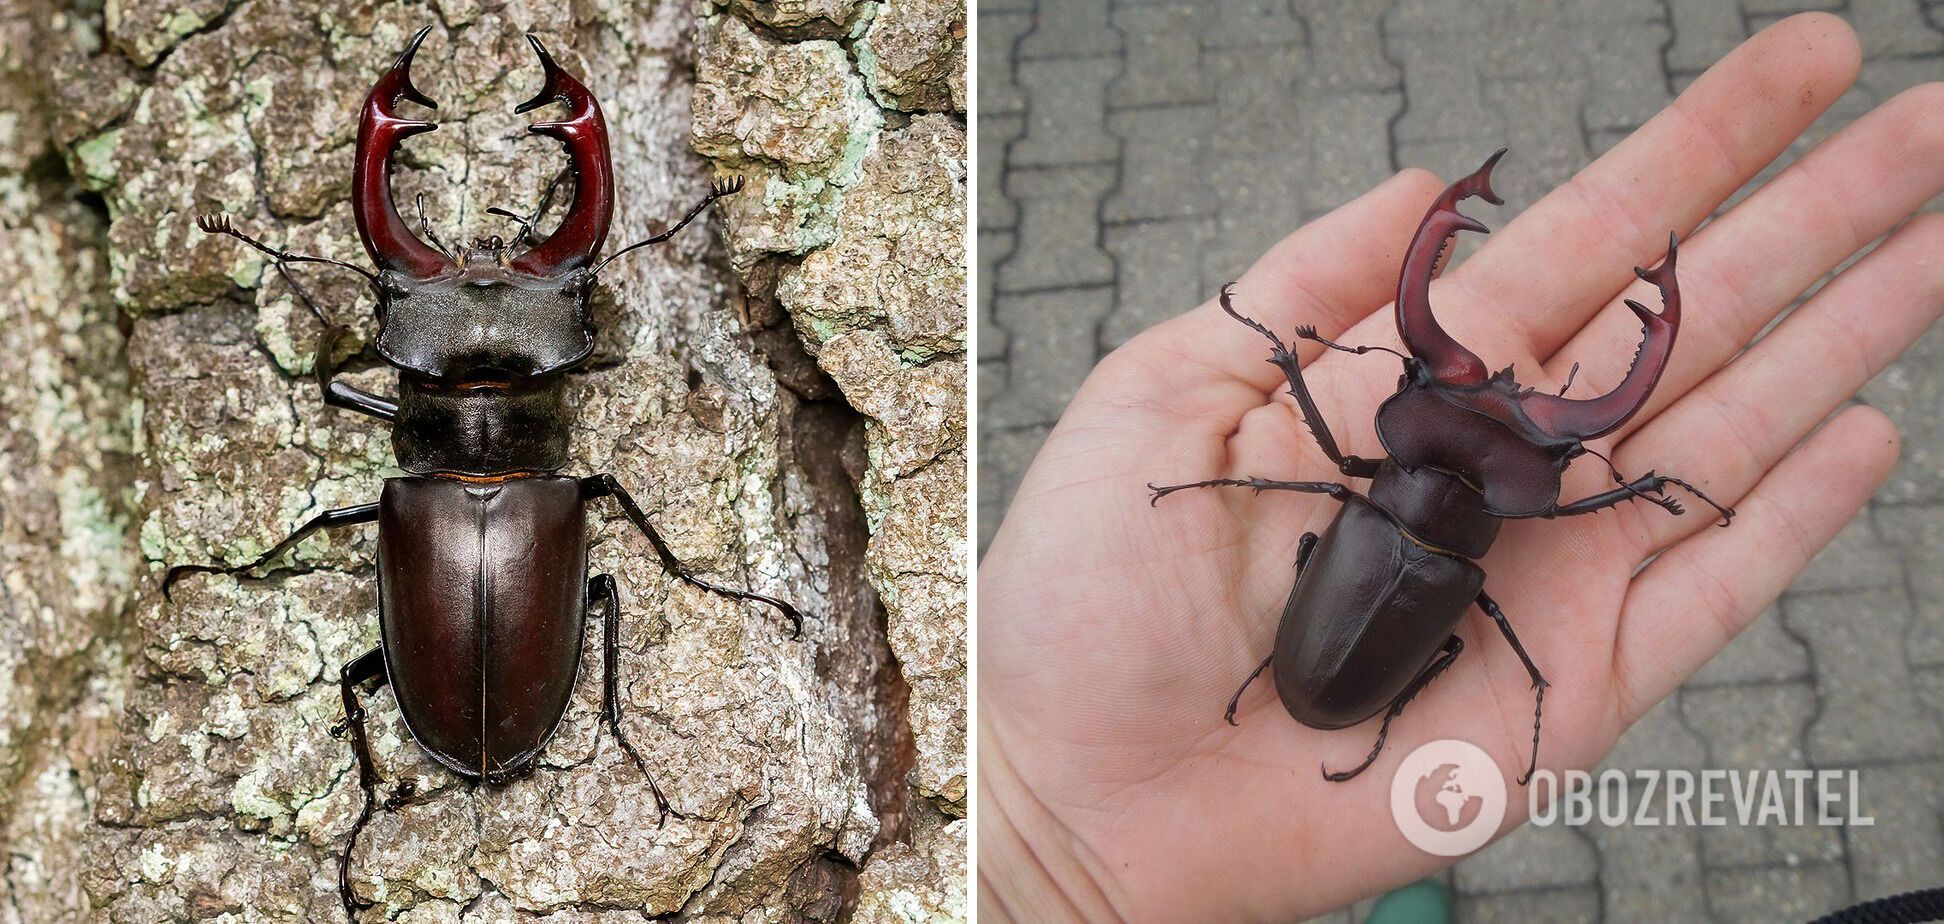 Як виглядають найбільші у світі жуки: топ-10 видів